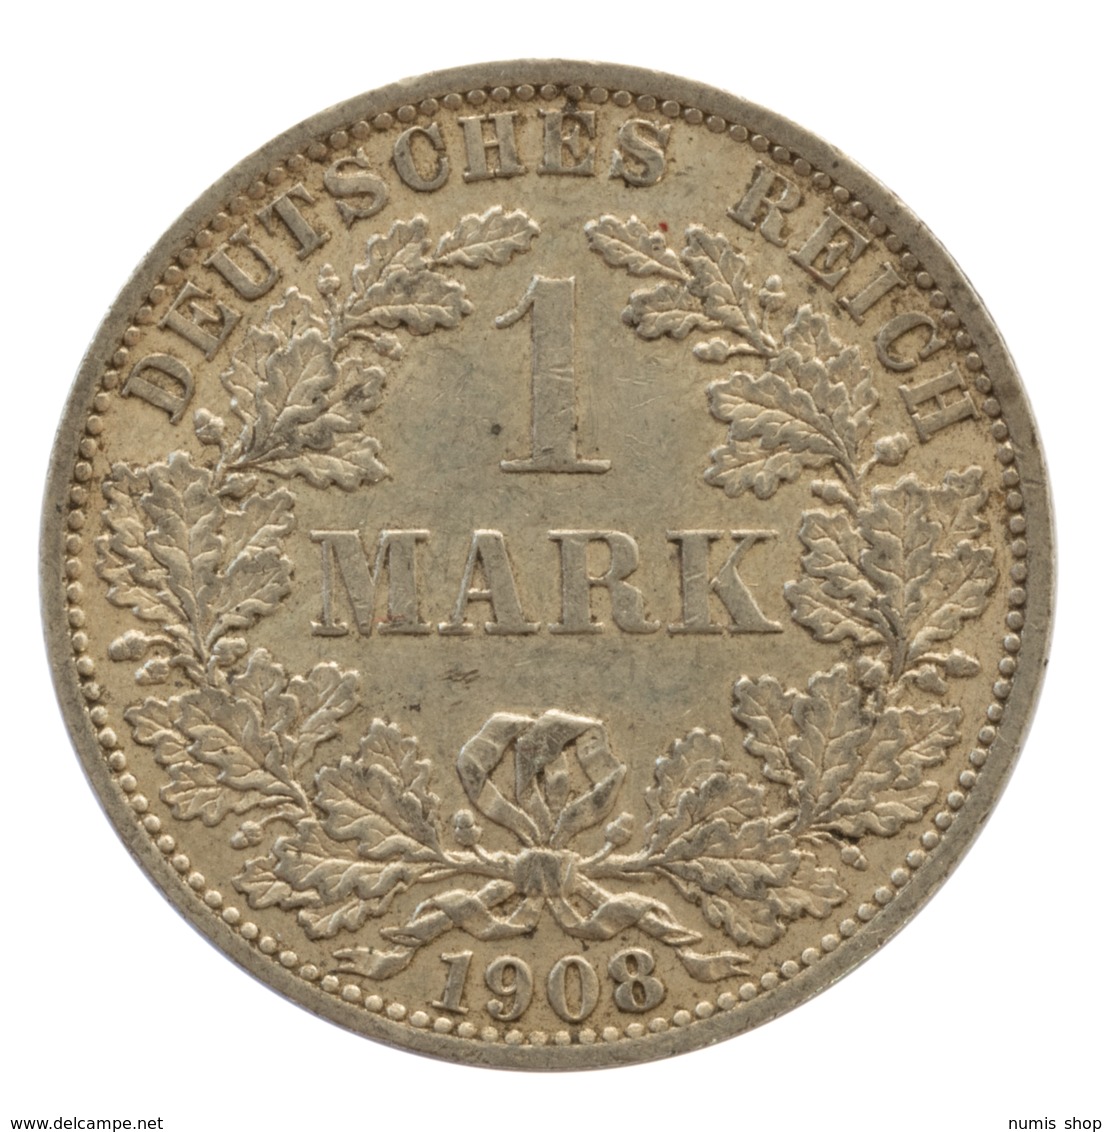 GERMANY - EMPIRE - 1 Mark - 1908 - A - Berlin - Silver - #DE060 - 1 Mark